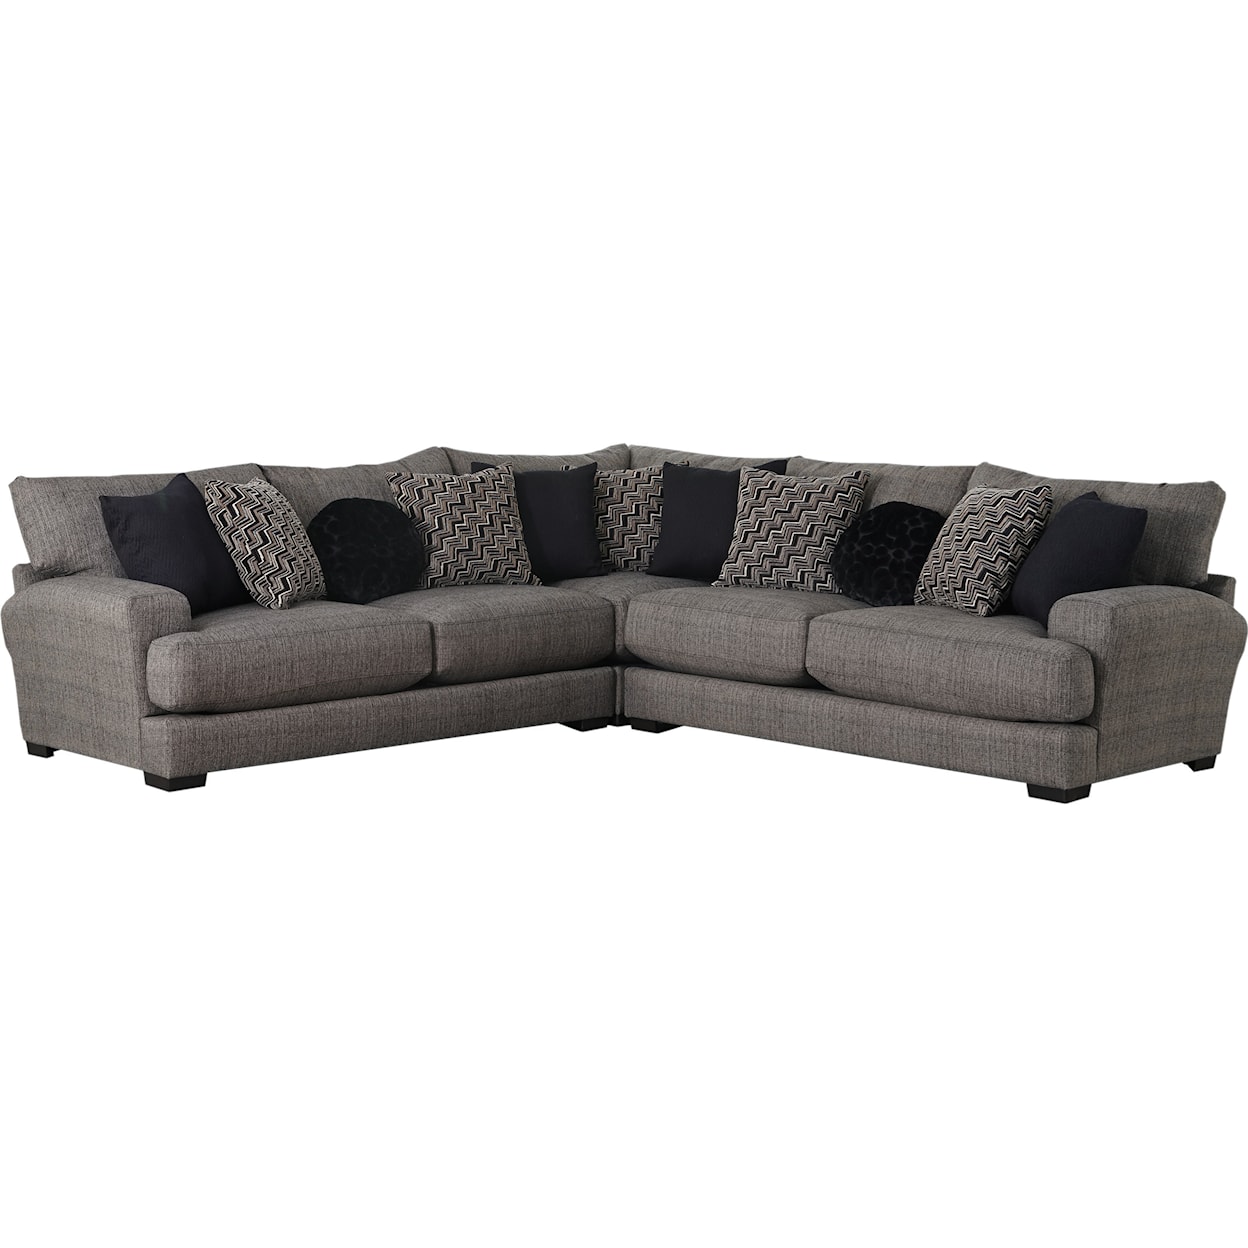 Carolina Furniture 4498 Ava Sectional Sofa with 4 Seats